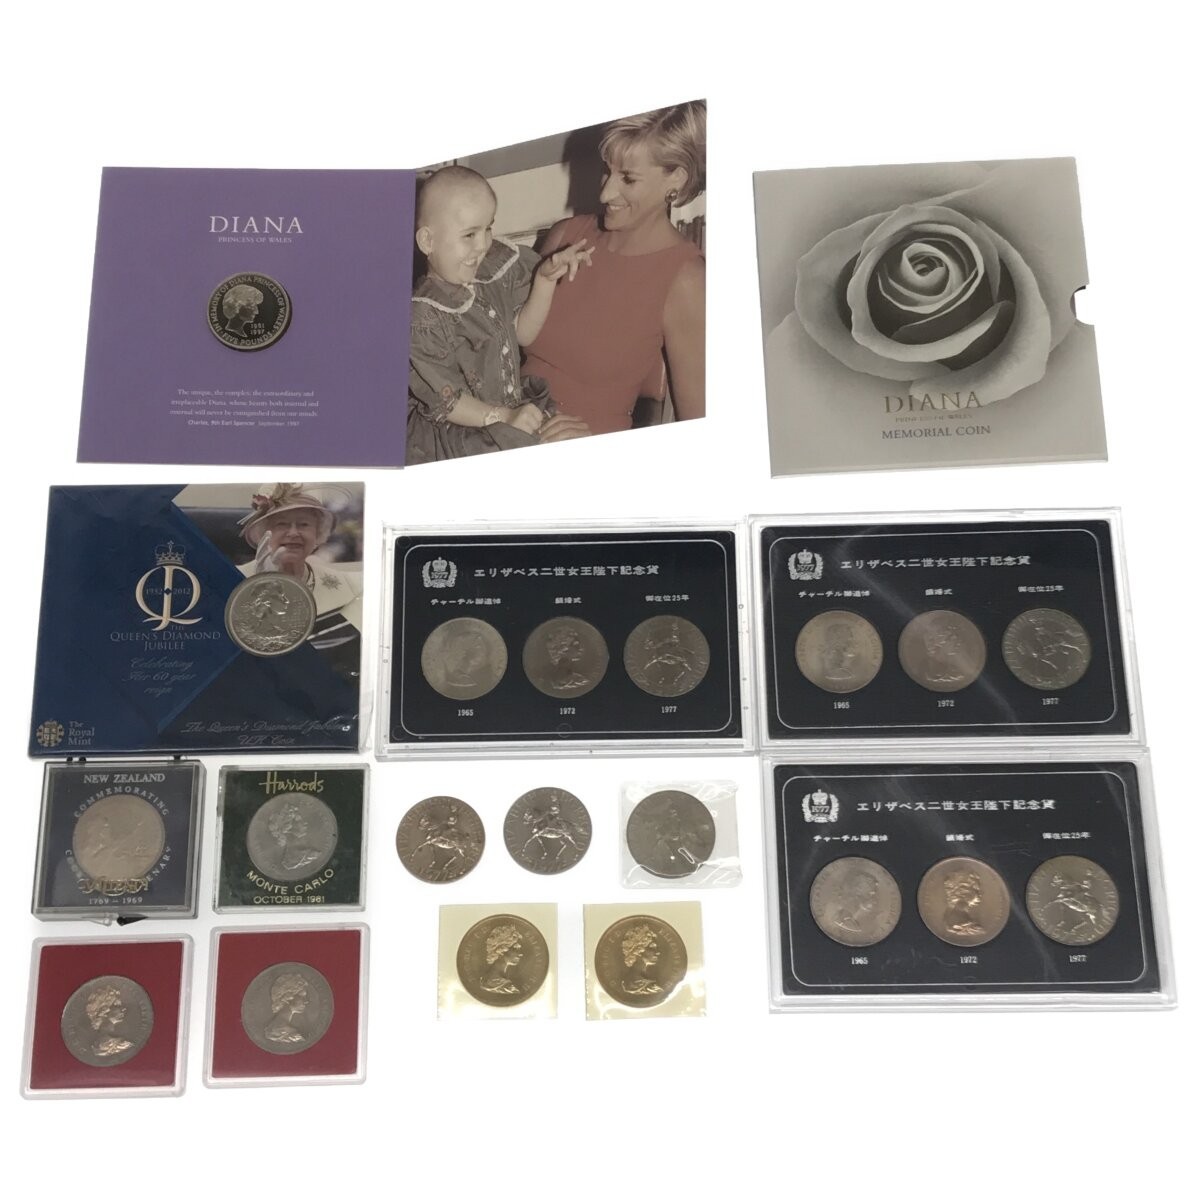 【英国コイン まとめ】エリザベス二世女王陛下記念貨 / 2012 Queen Elizabeth II Diamond Jubilee / DIANA MEMORIAL COIN ROYAL MINT Z628